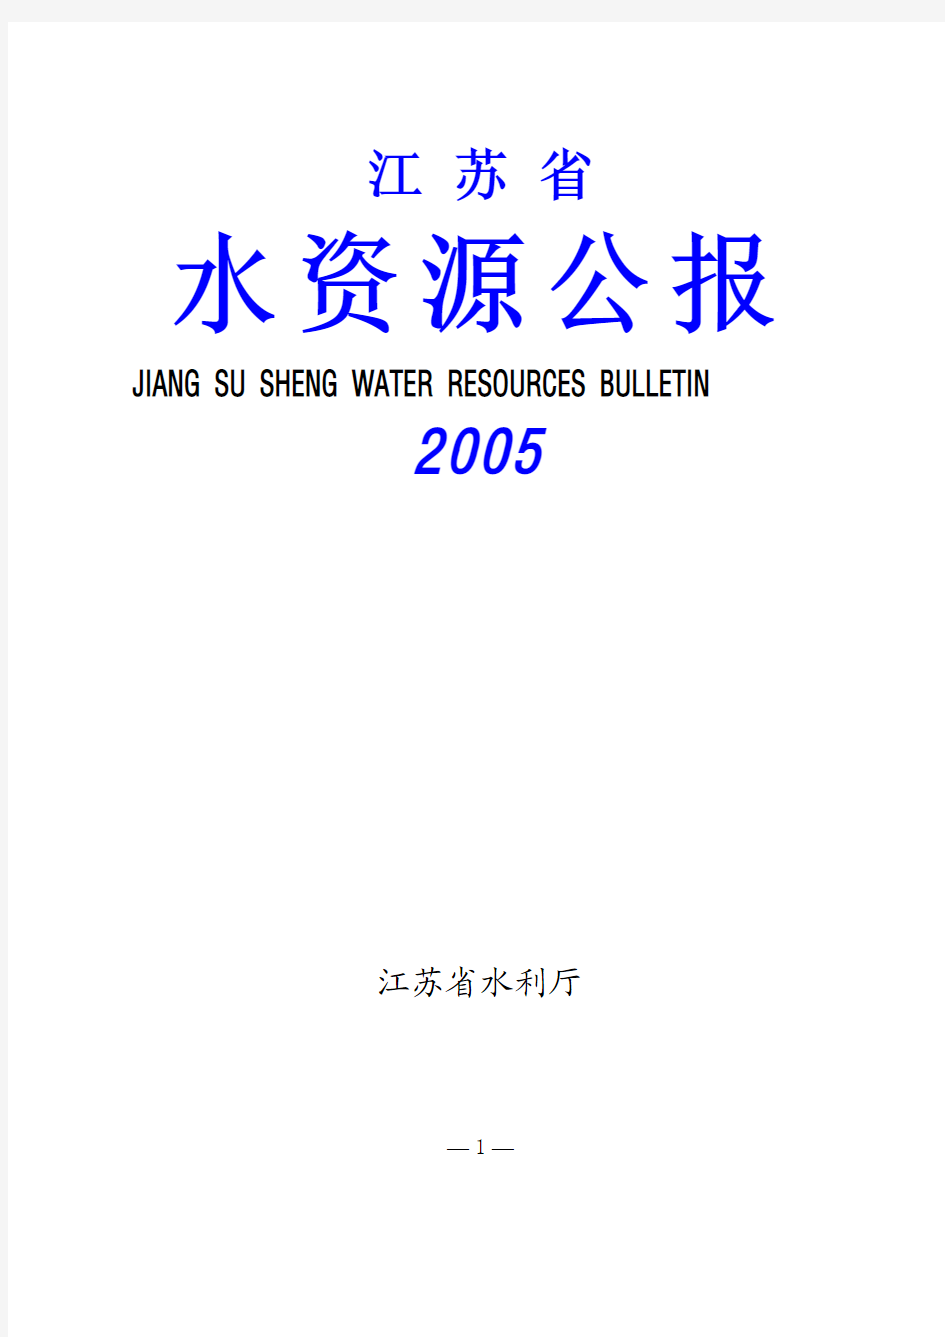 2005年江苏省水资源公报